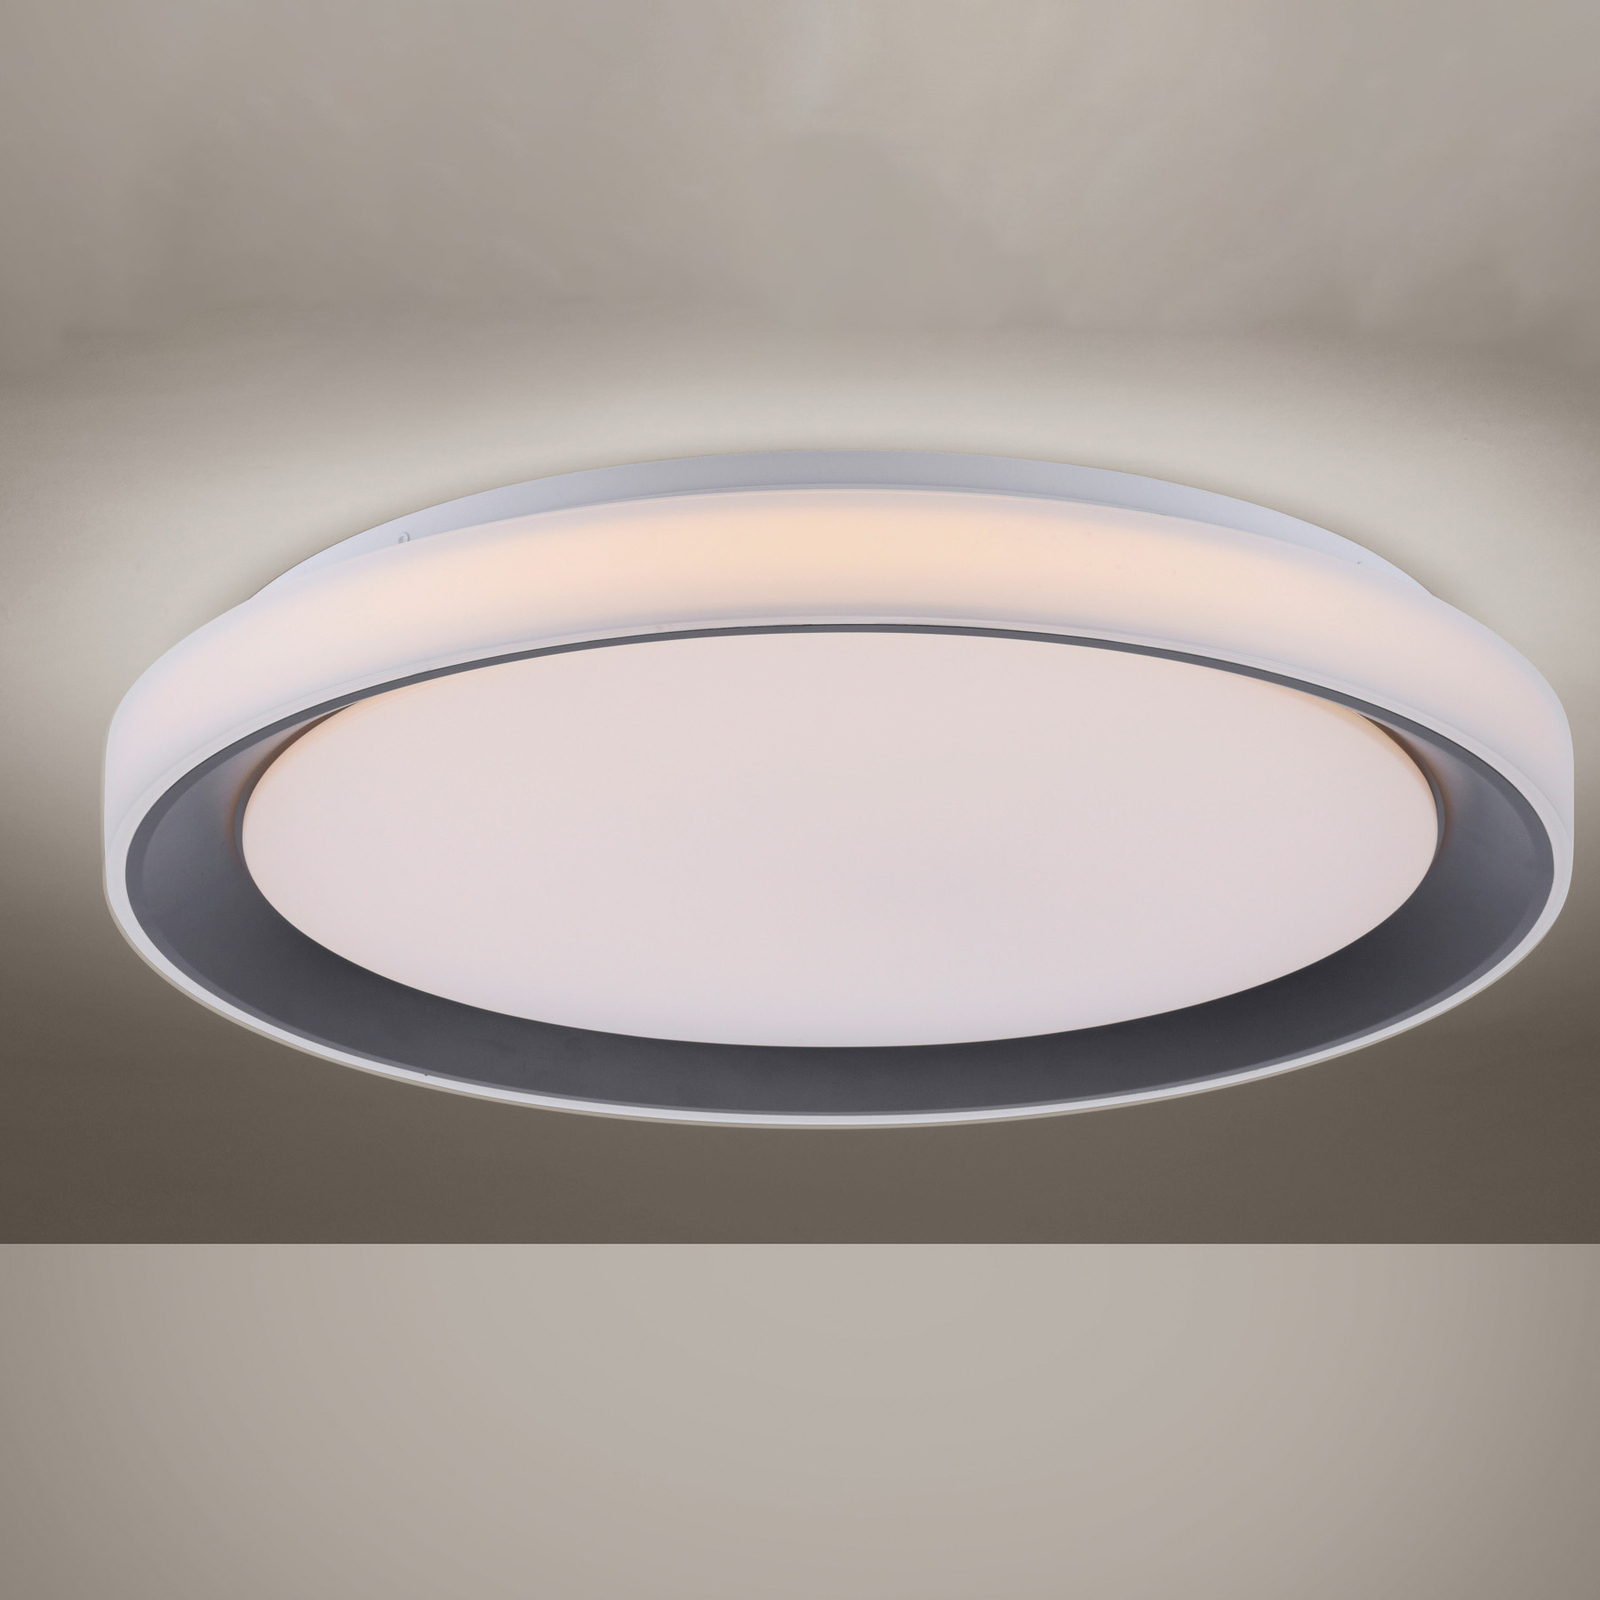 LOLA Smart Disk LED ceiling lamp black/white, RGBW